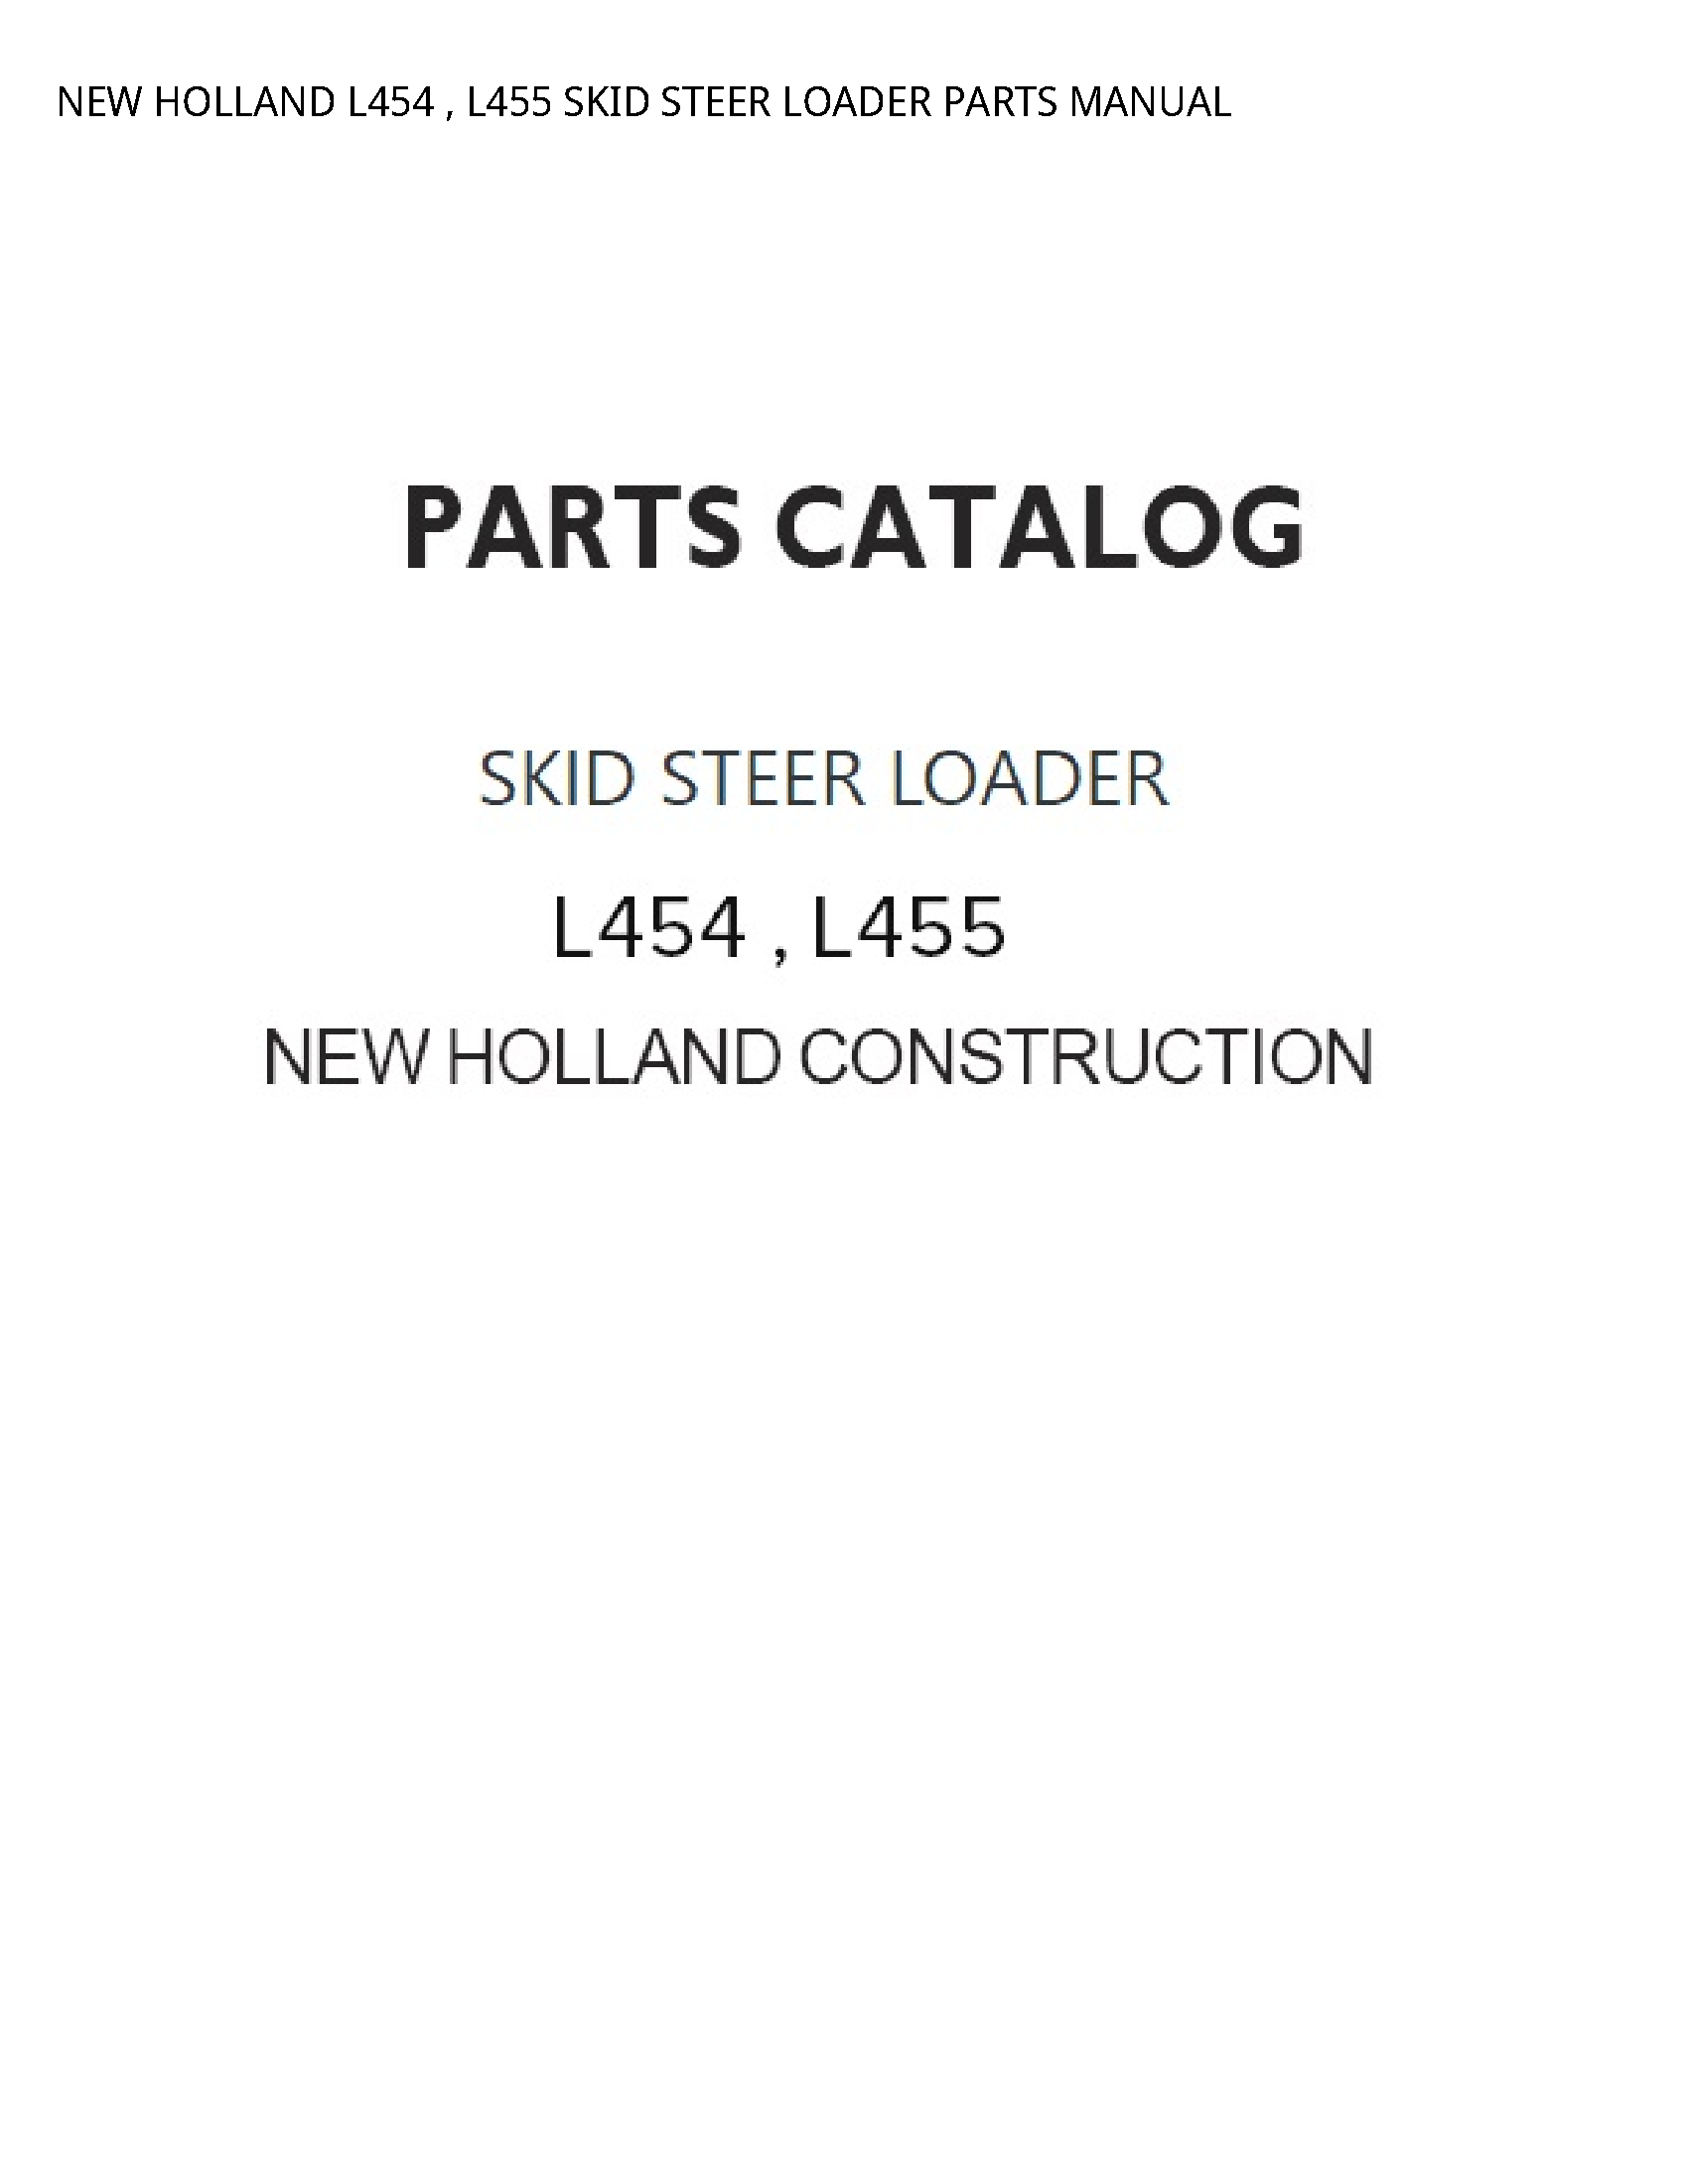 New Holland L454 SKID STEER LOADER PARTS manual